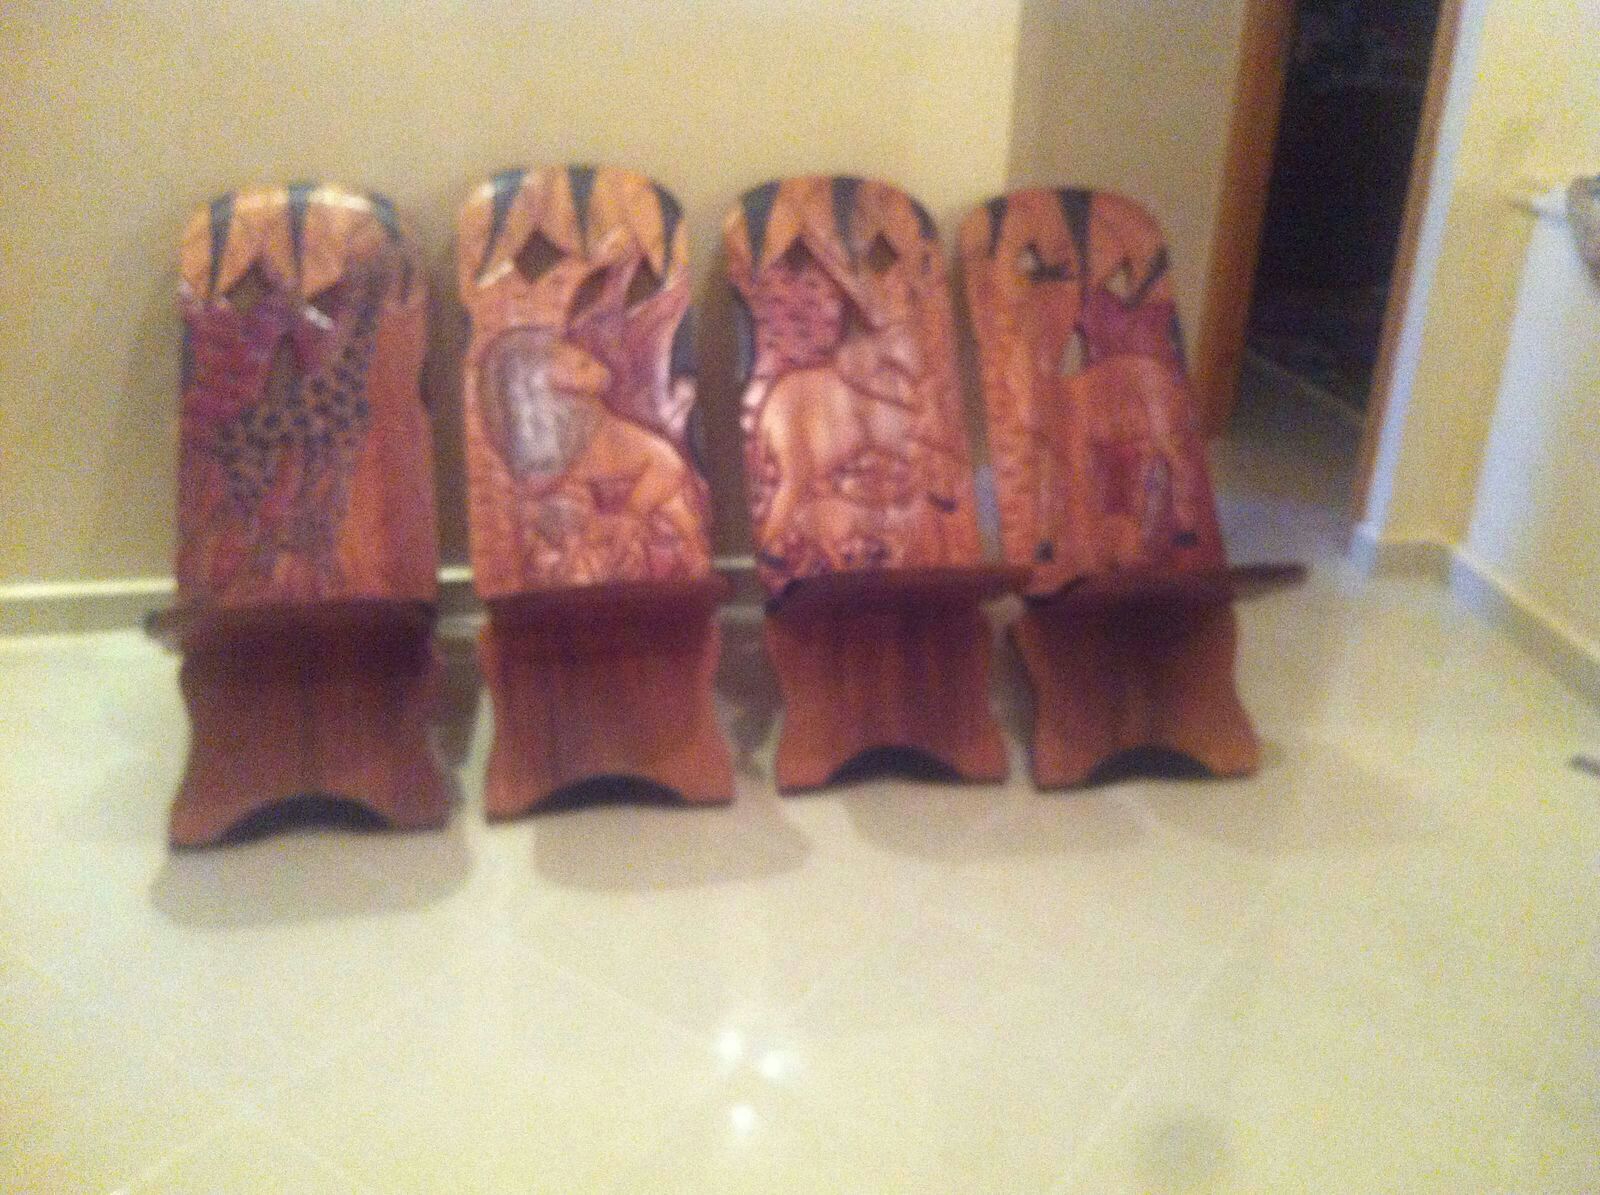 table et 4 chaises